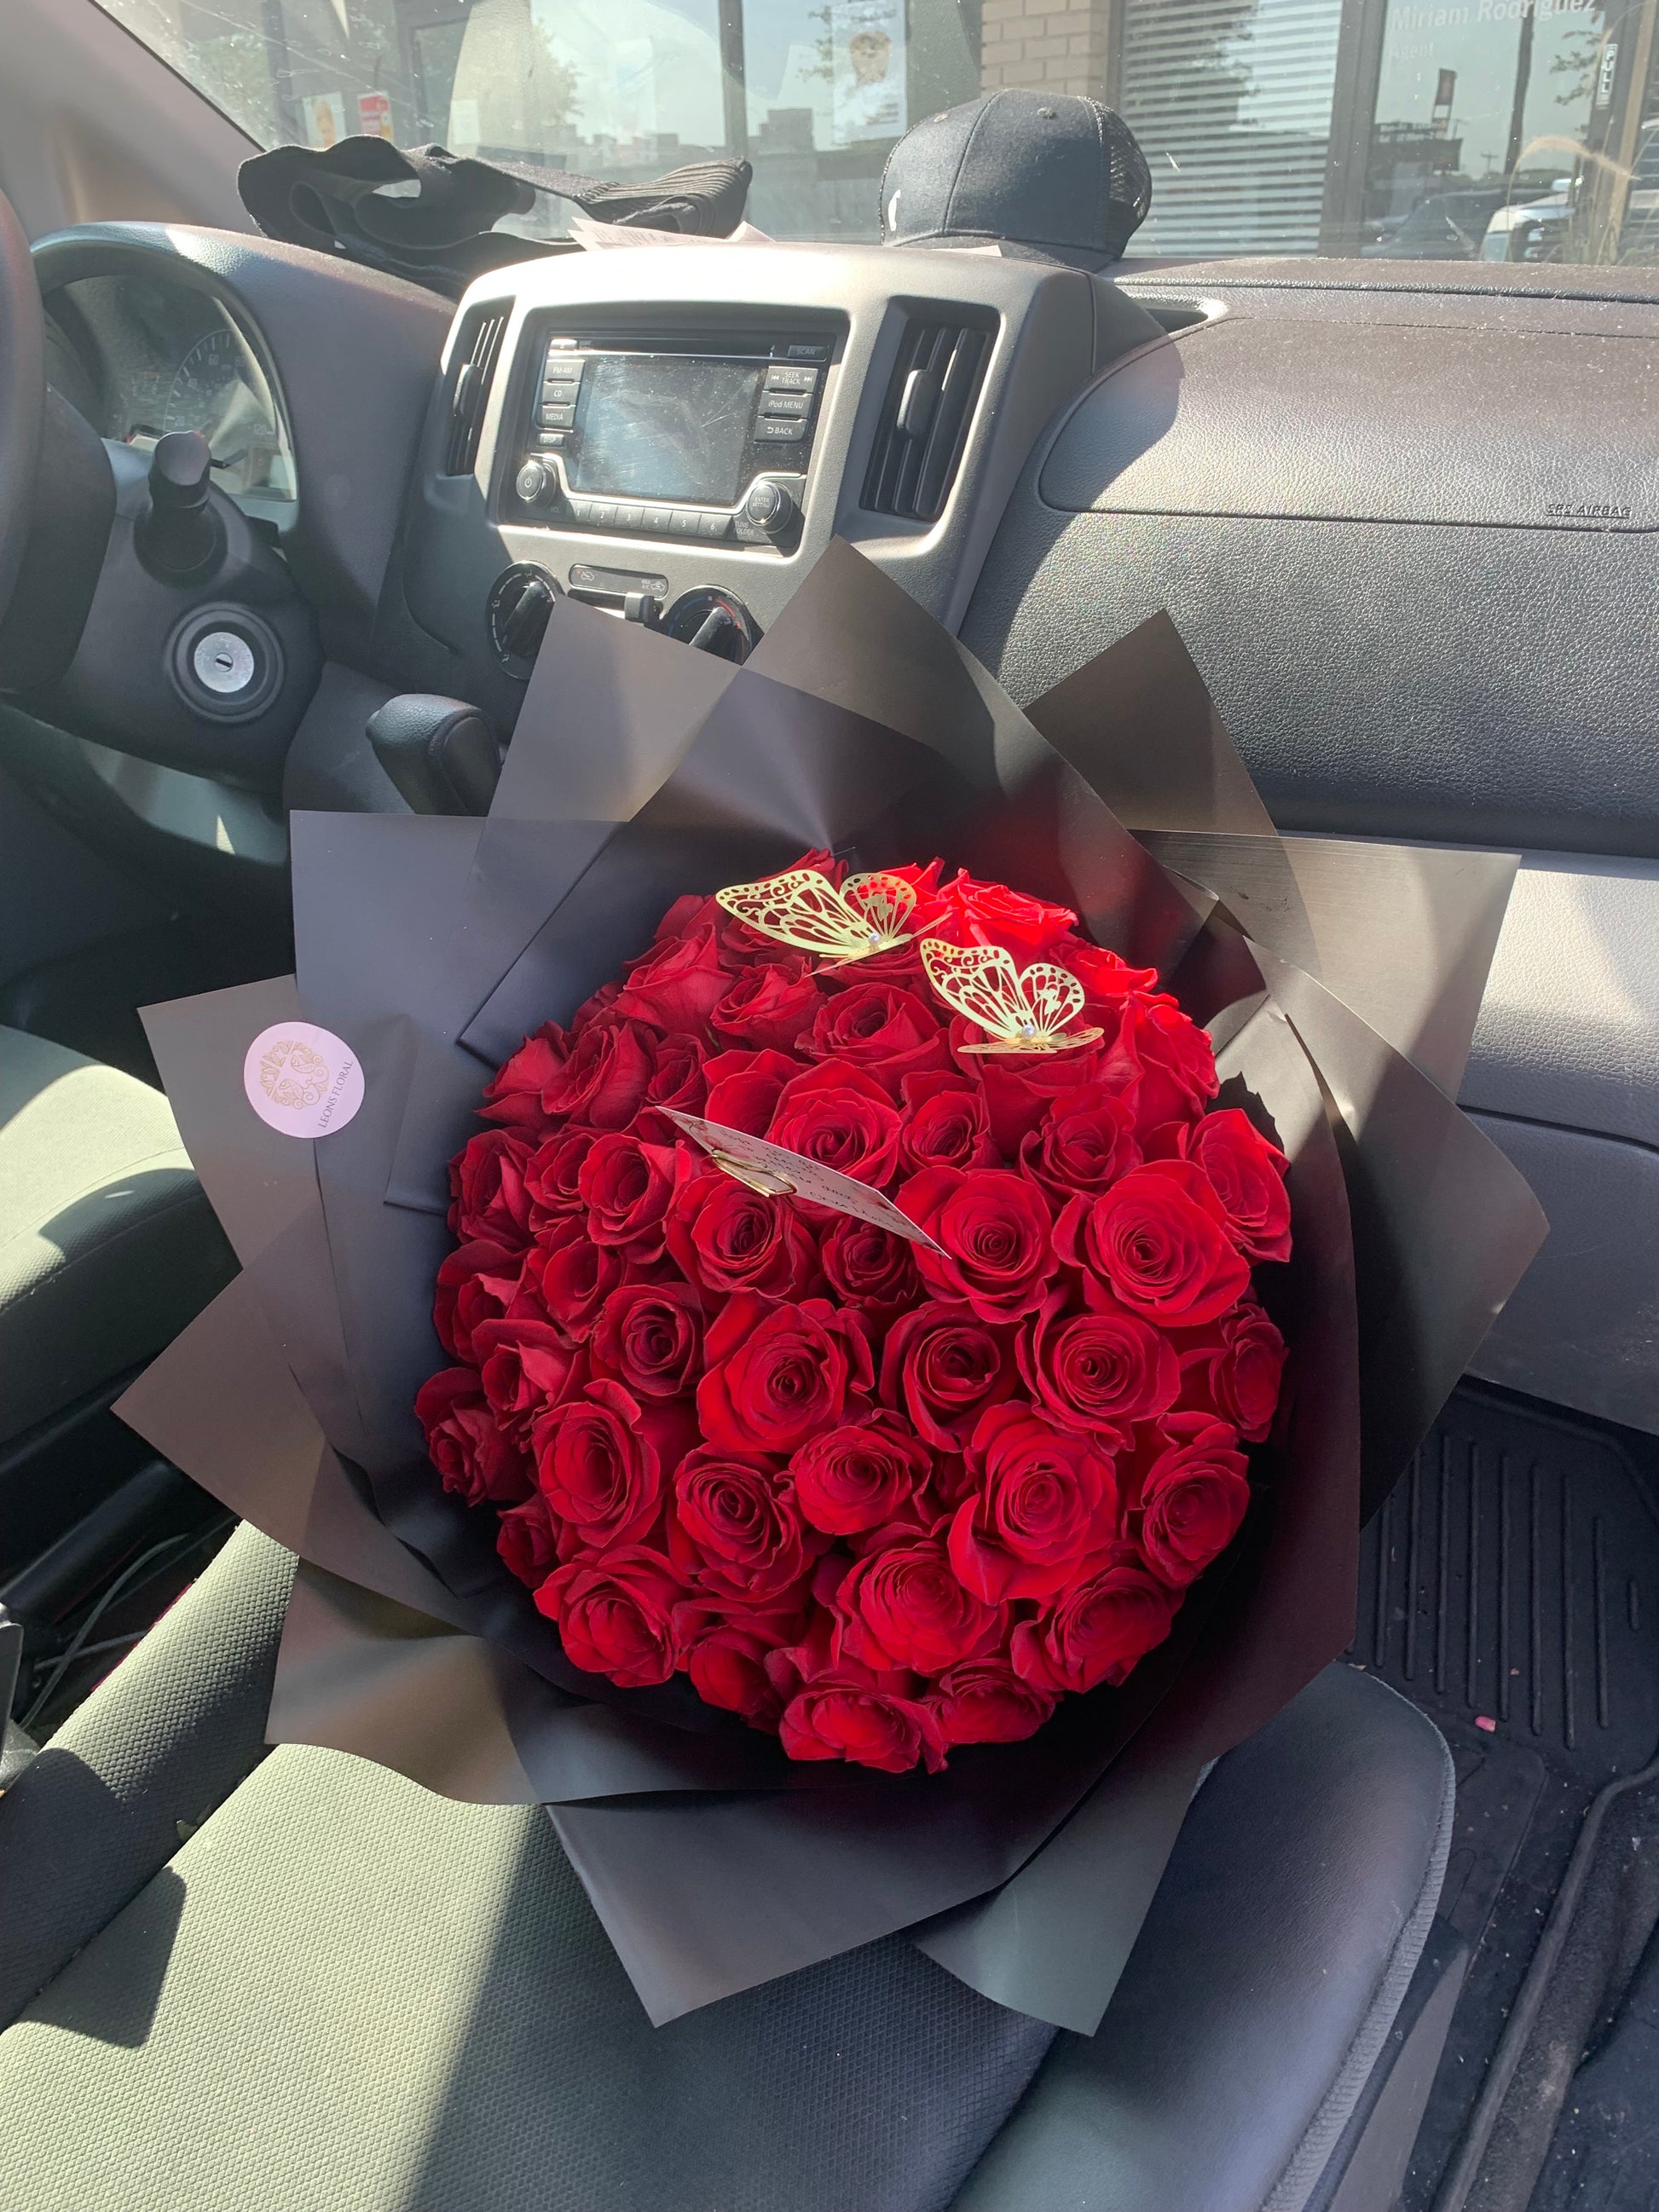 044 - Luxurious 50 Roses Bouquet - Ramo Buchon de 50 Rosas - Love